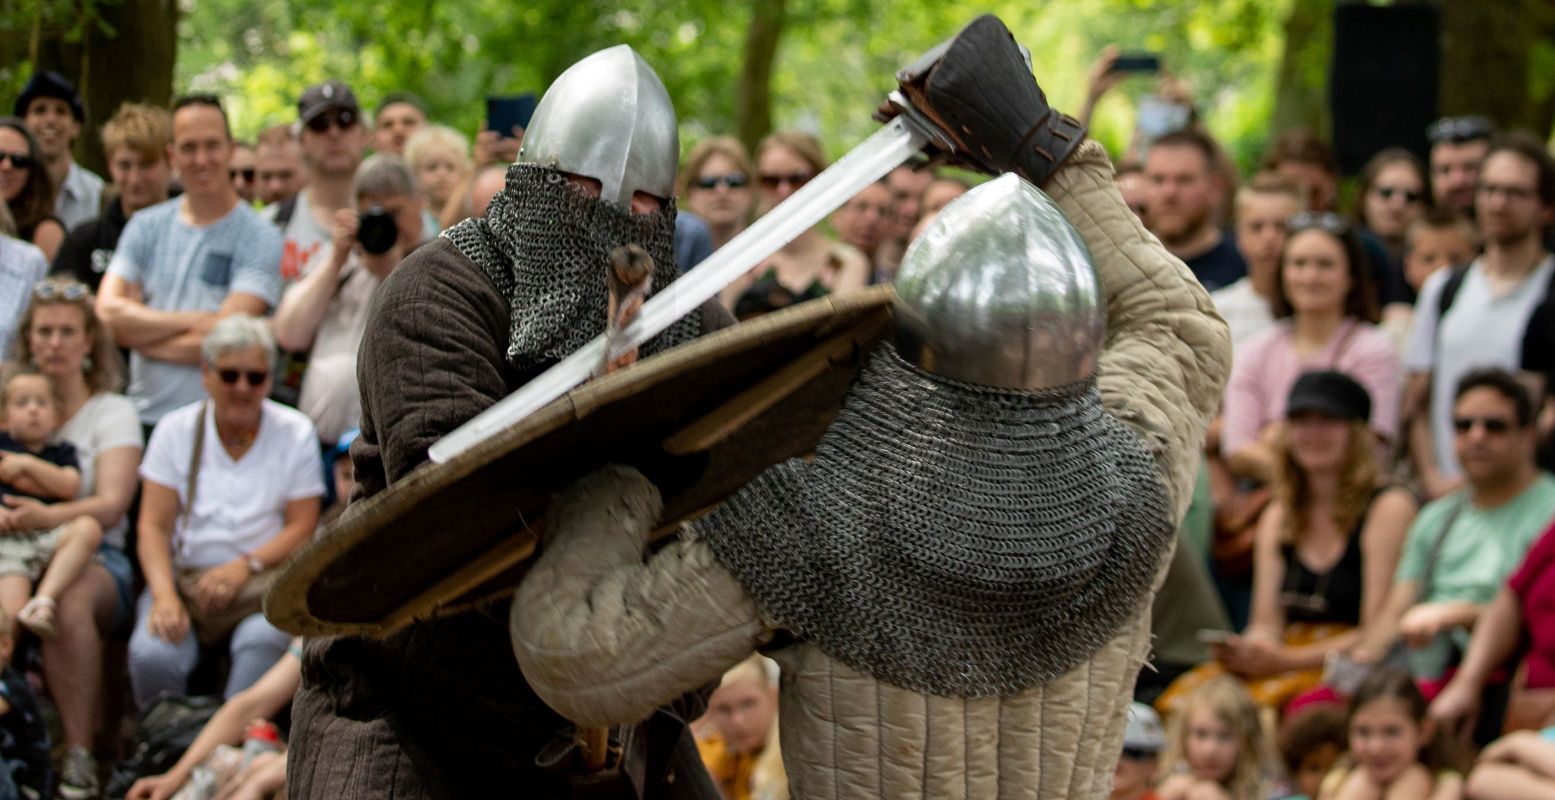 Kijk vol verbazing toe hoe twee Vikingen de strijd aangaan met elkaar in een gevecht. Foto: preHistorisch Dorp